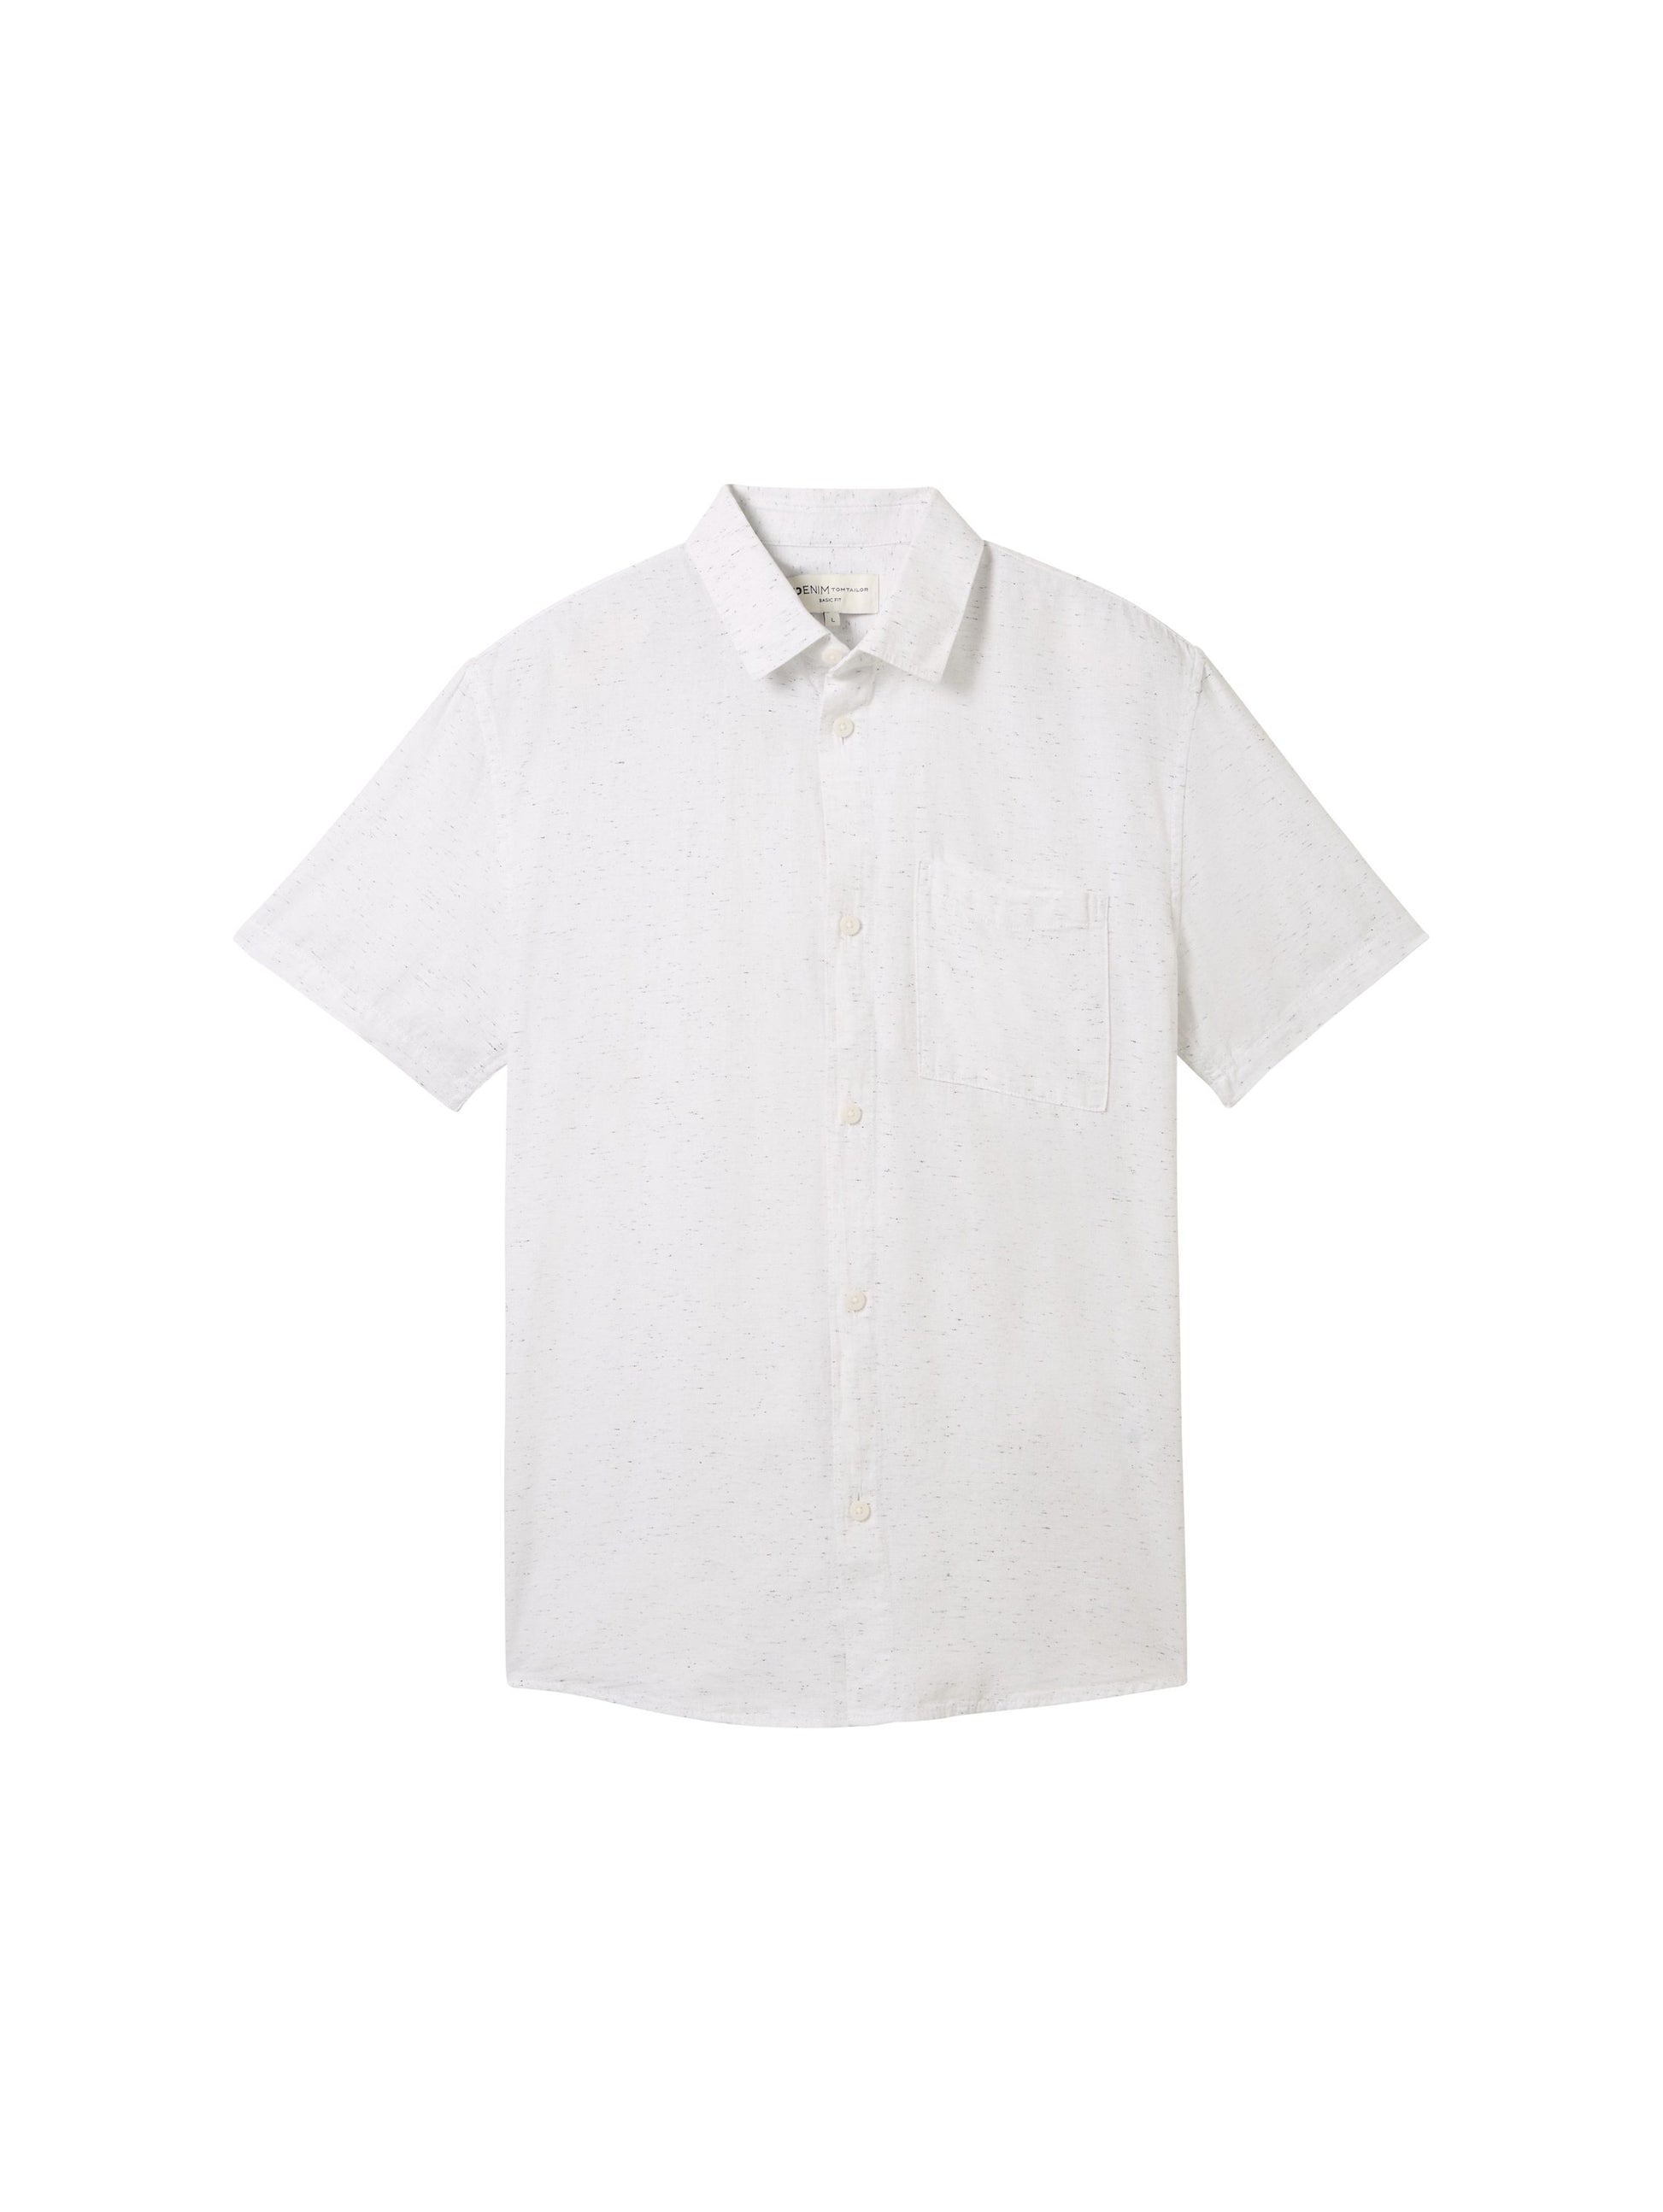 structured shirt (White Herringb)